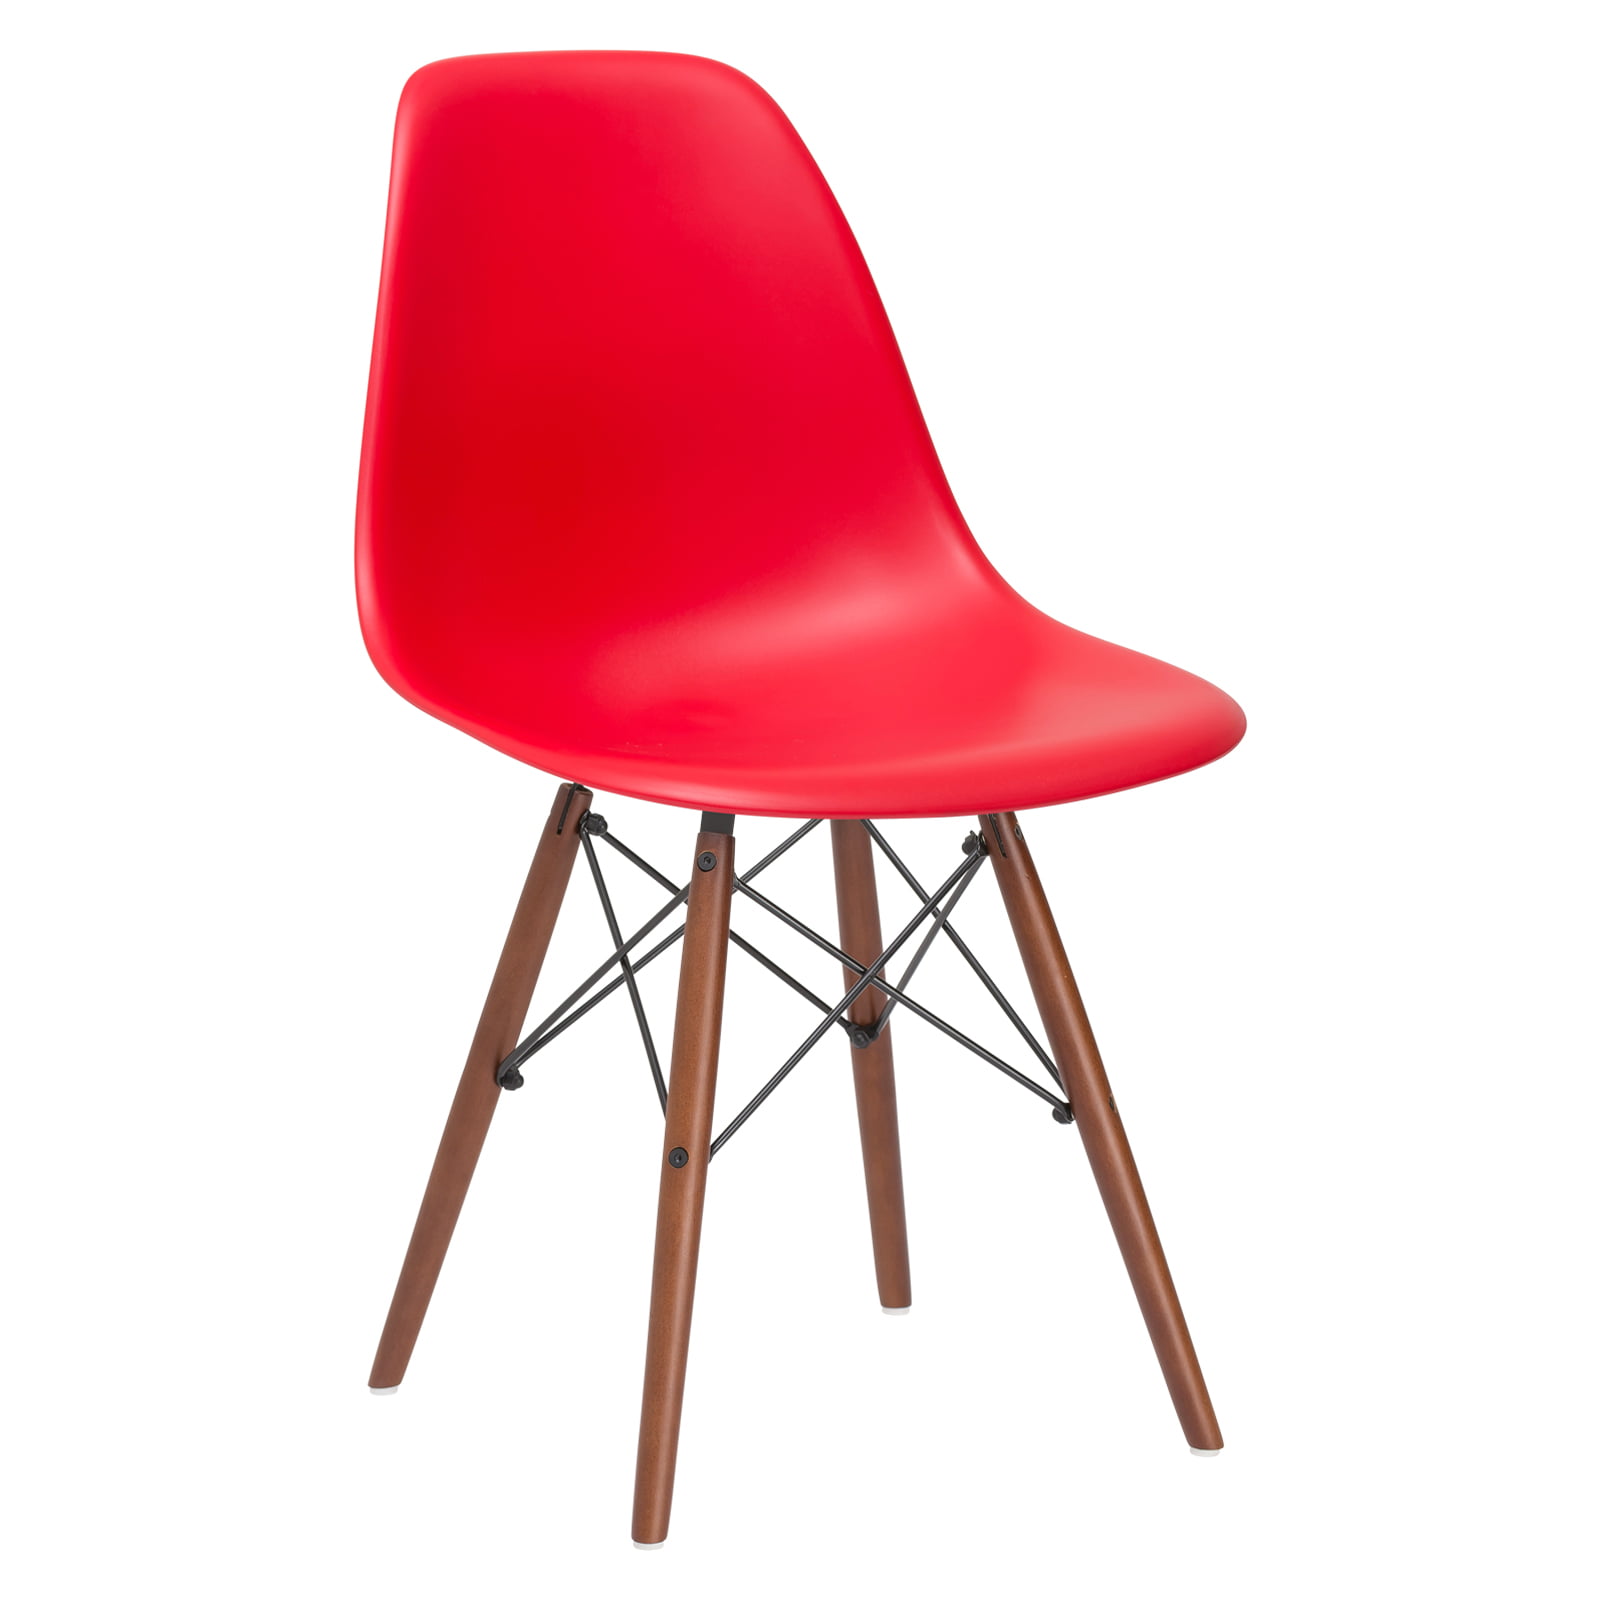 Edgemod Vortex Side Chair Walnut Legs in red - Walmart.com